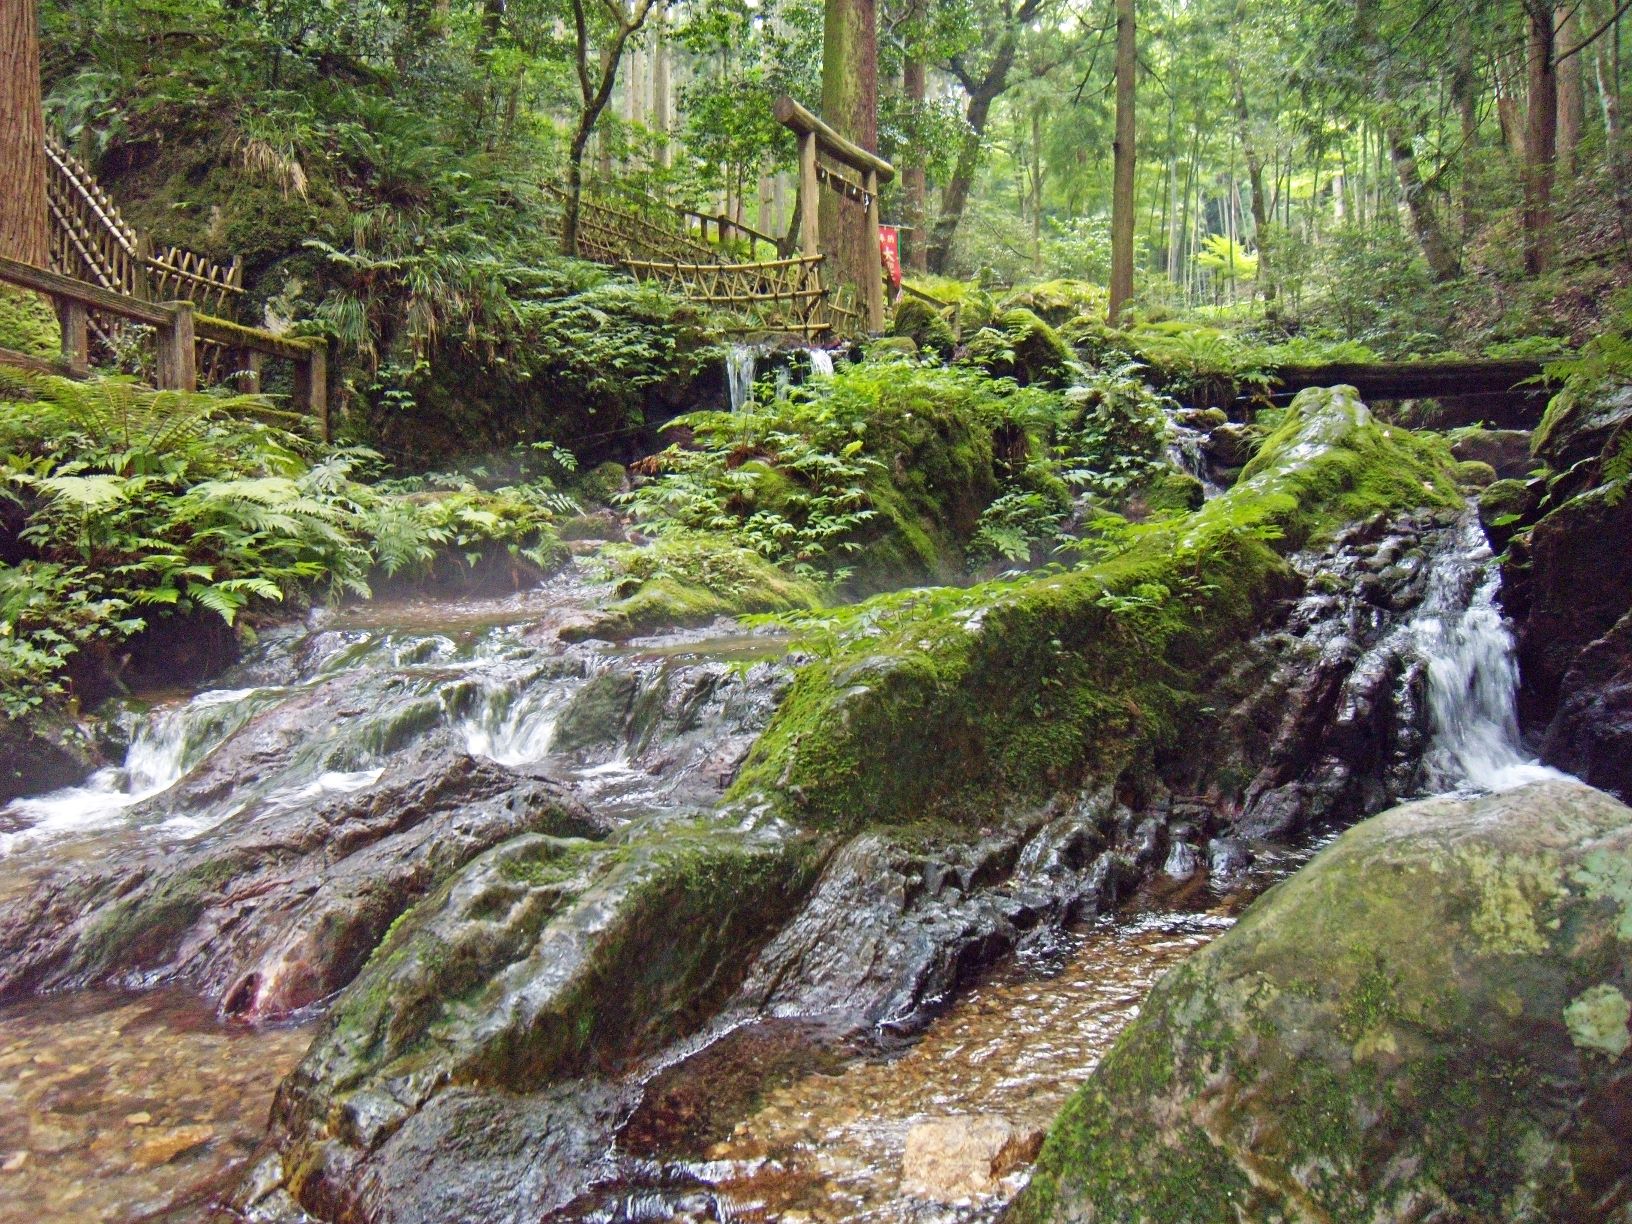 福井県の爪割りの滝の写真。湧き水がゴツゴツした岩の斜面に沿って滝のように激しく流れています。